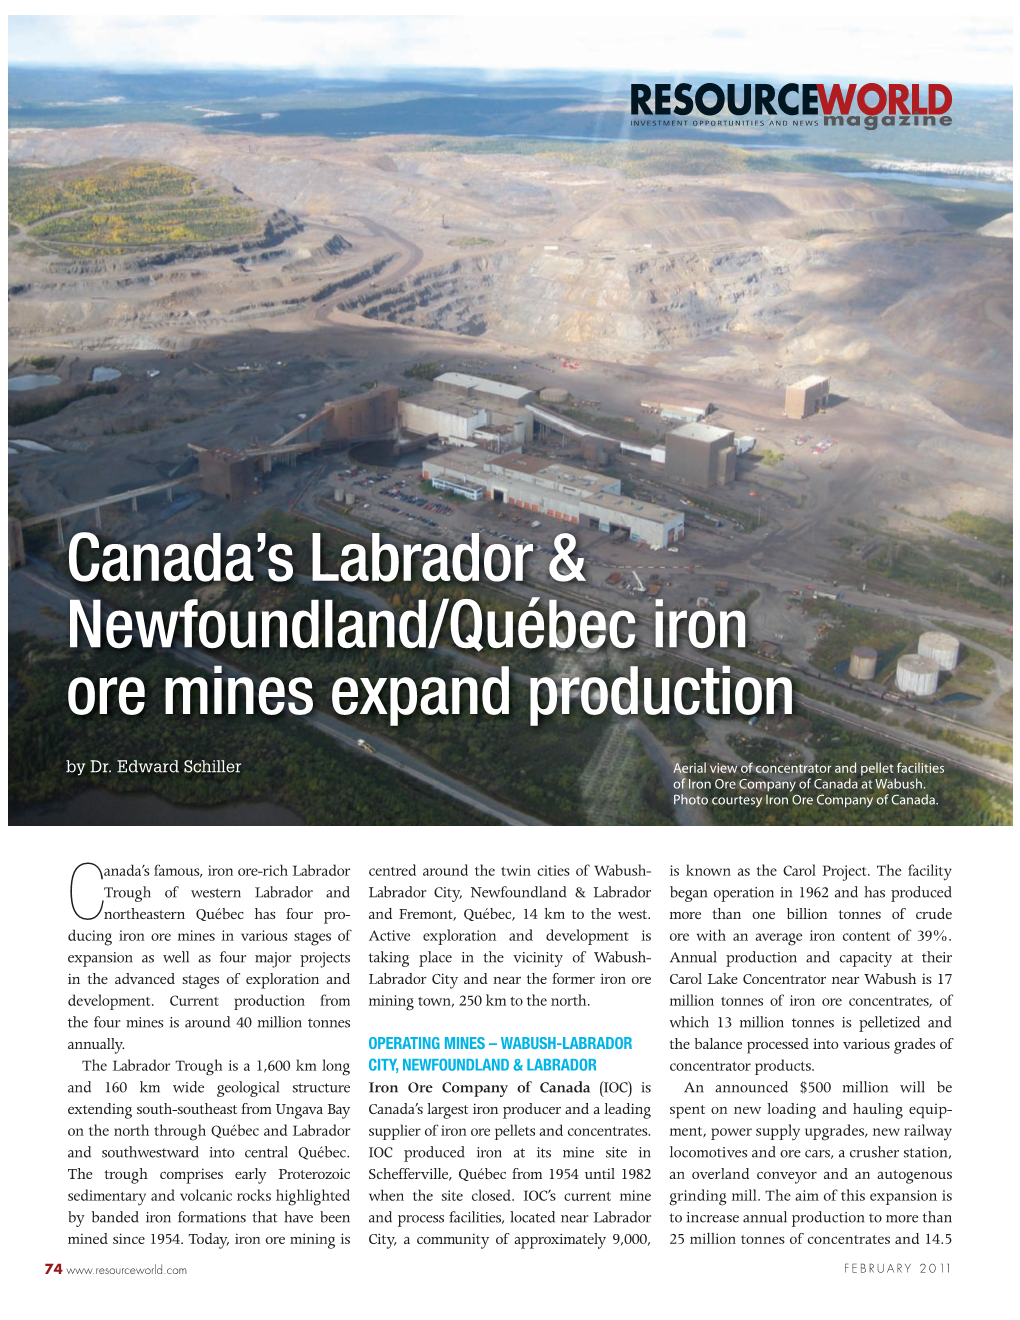 Canada's Labrador & Newfoundland/Québec Iron Ore